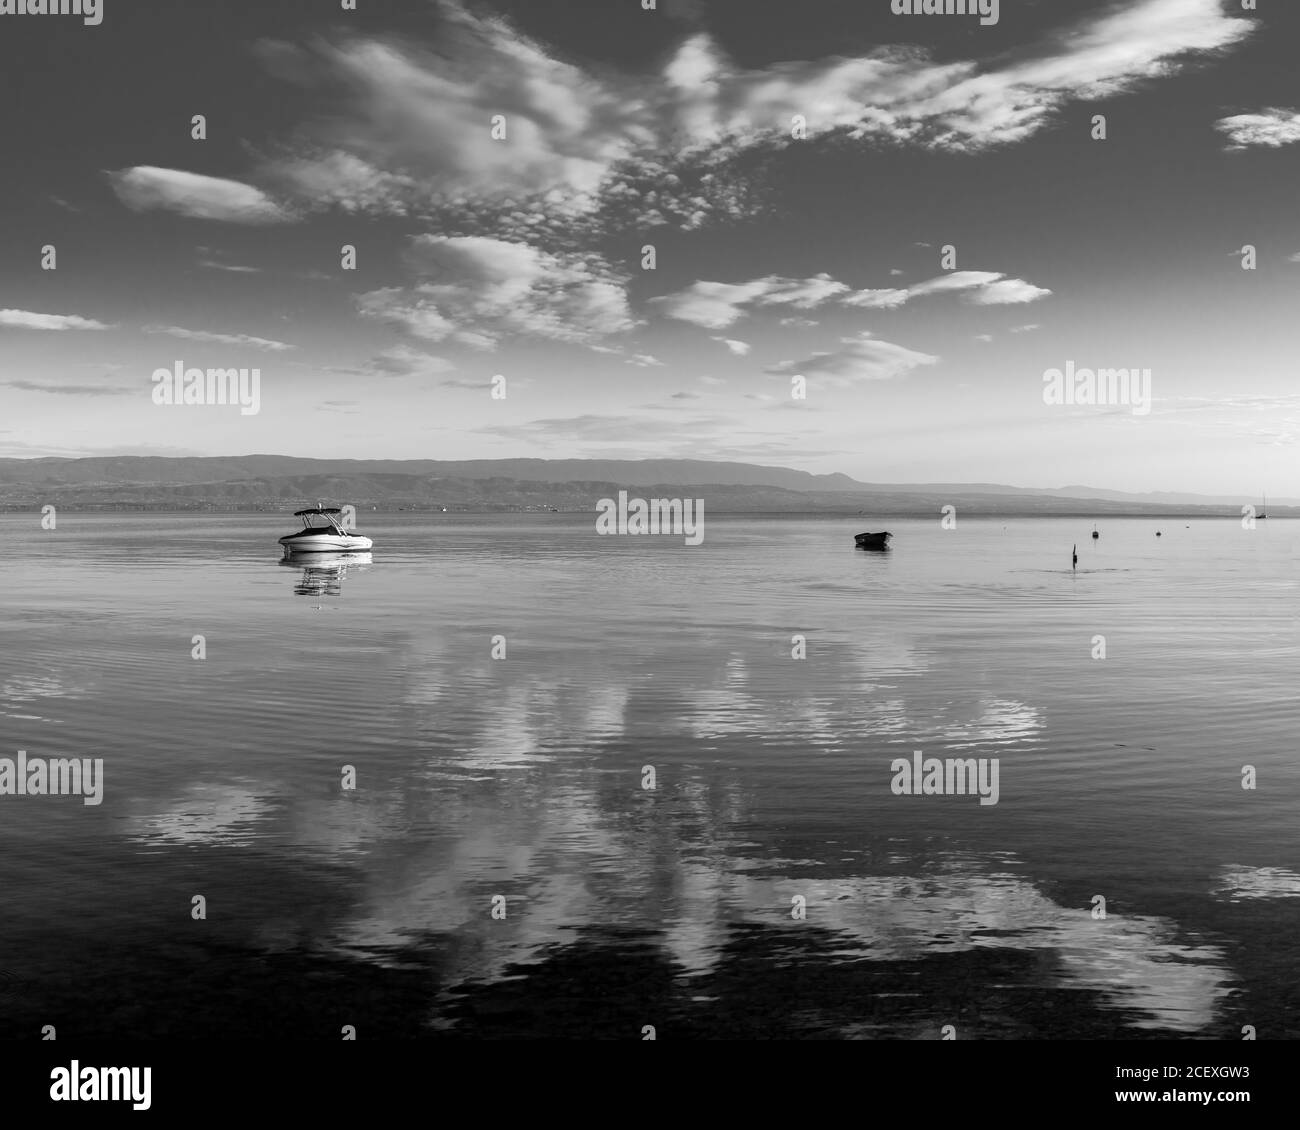 Réflexion symétrique et bateaux sur le lac de Genève, France. Image en noir et blanc Banque D'Images